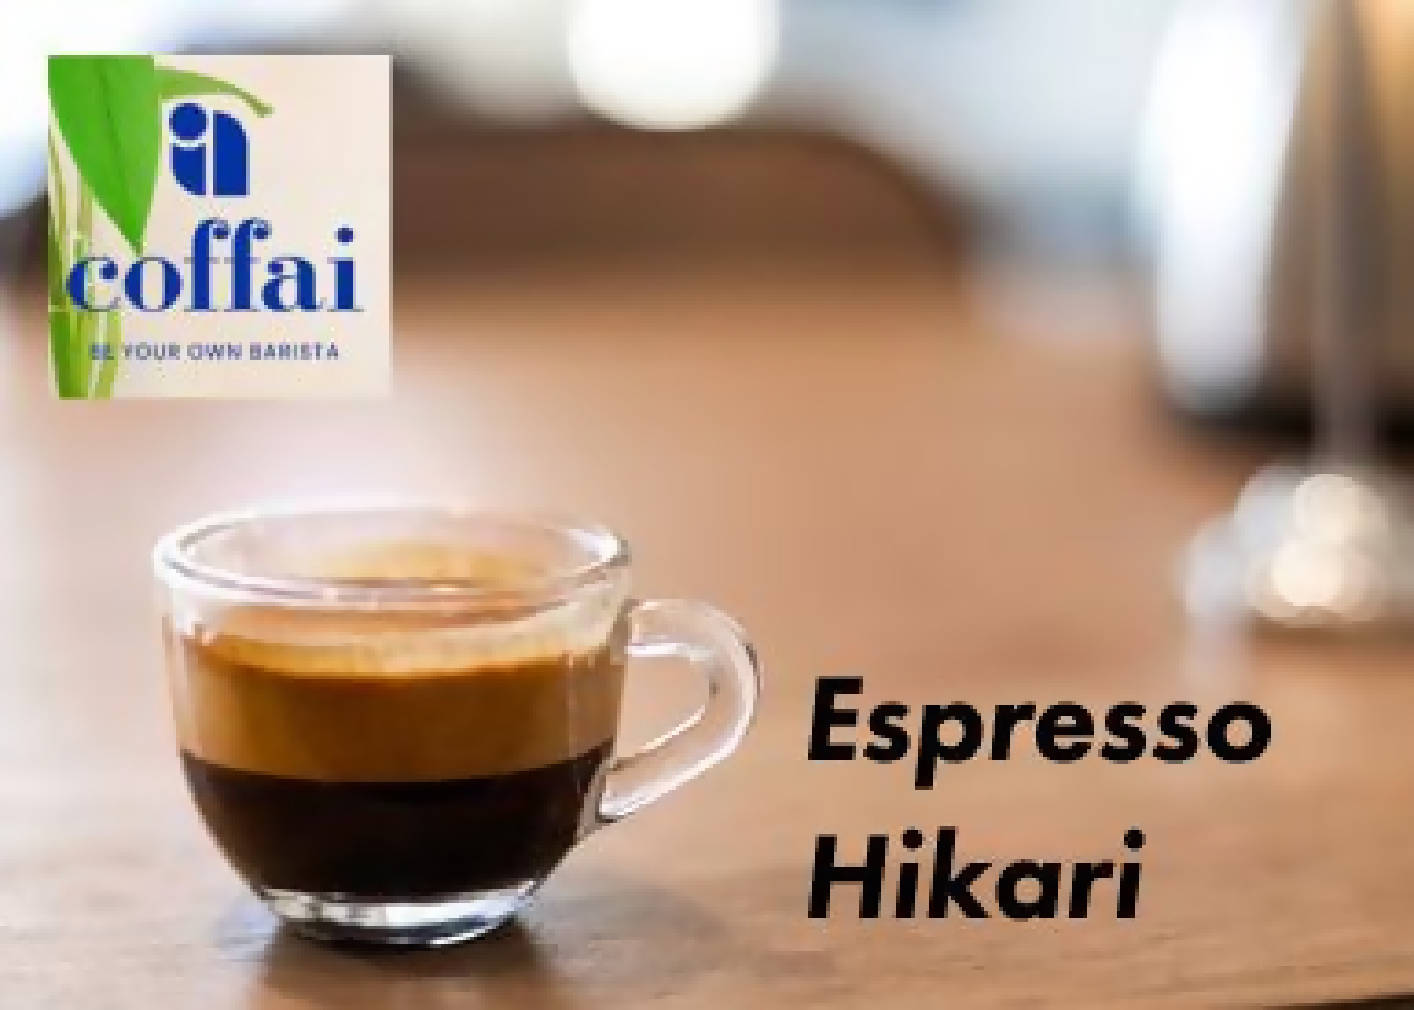 Espresso - Hikari